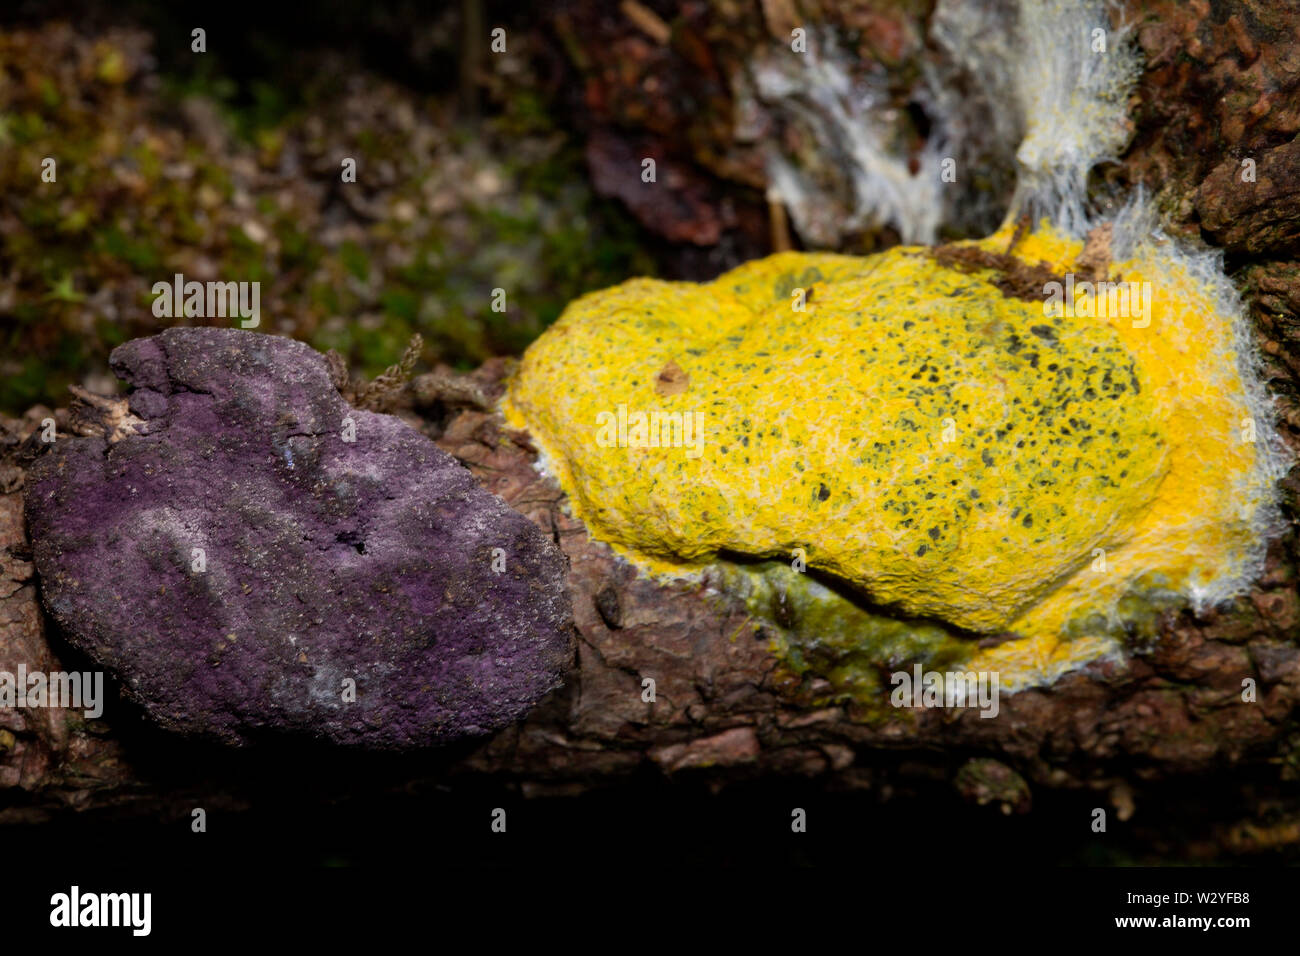 Hongos, perro vomita slime mold, (Nectriopsis violacea), (Fuligo septica) Foto de stock